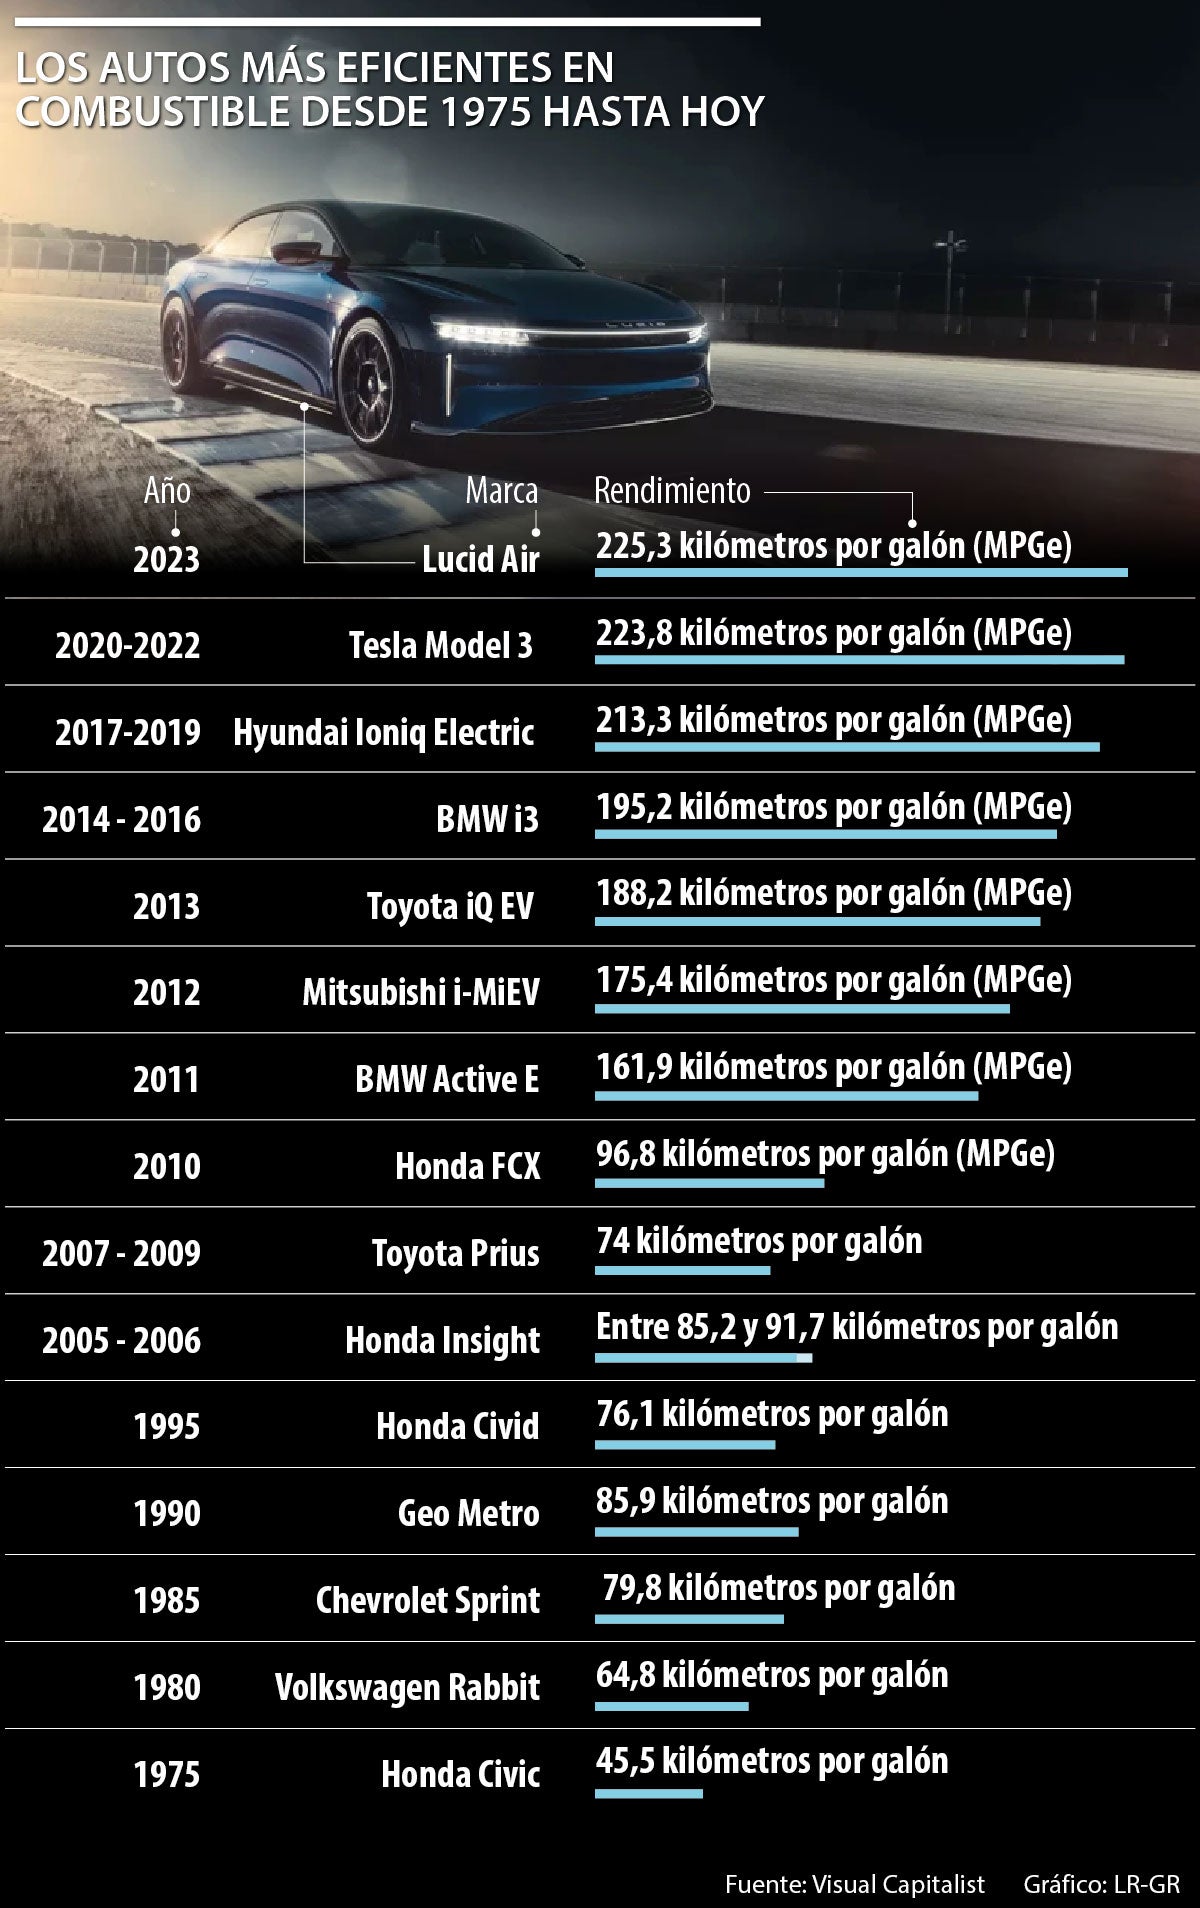 Los carros con mejor rendimiento de combustible desde 1975